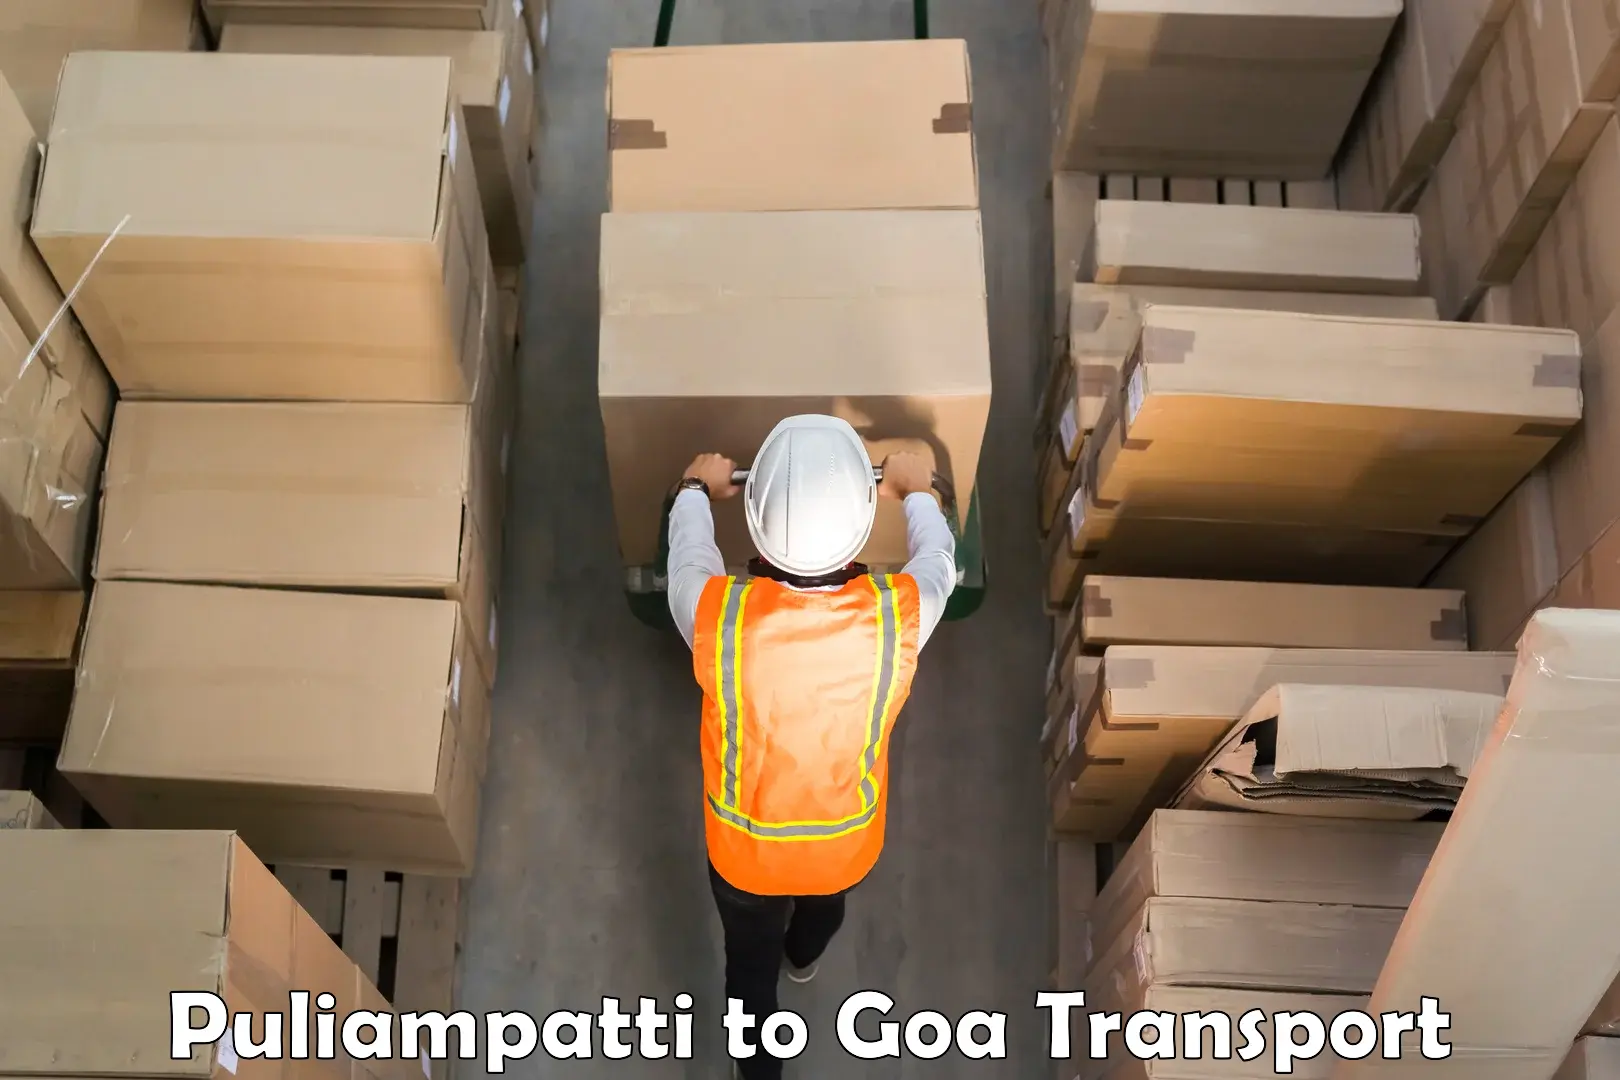 Nearby transport service Puliampatti to Goa